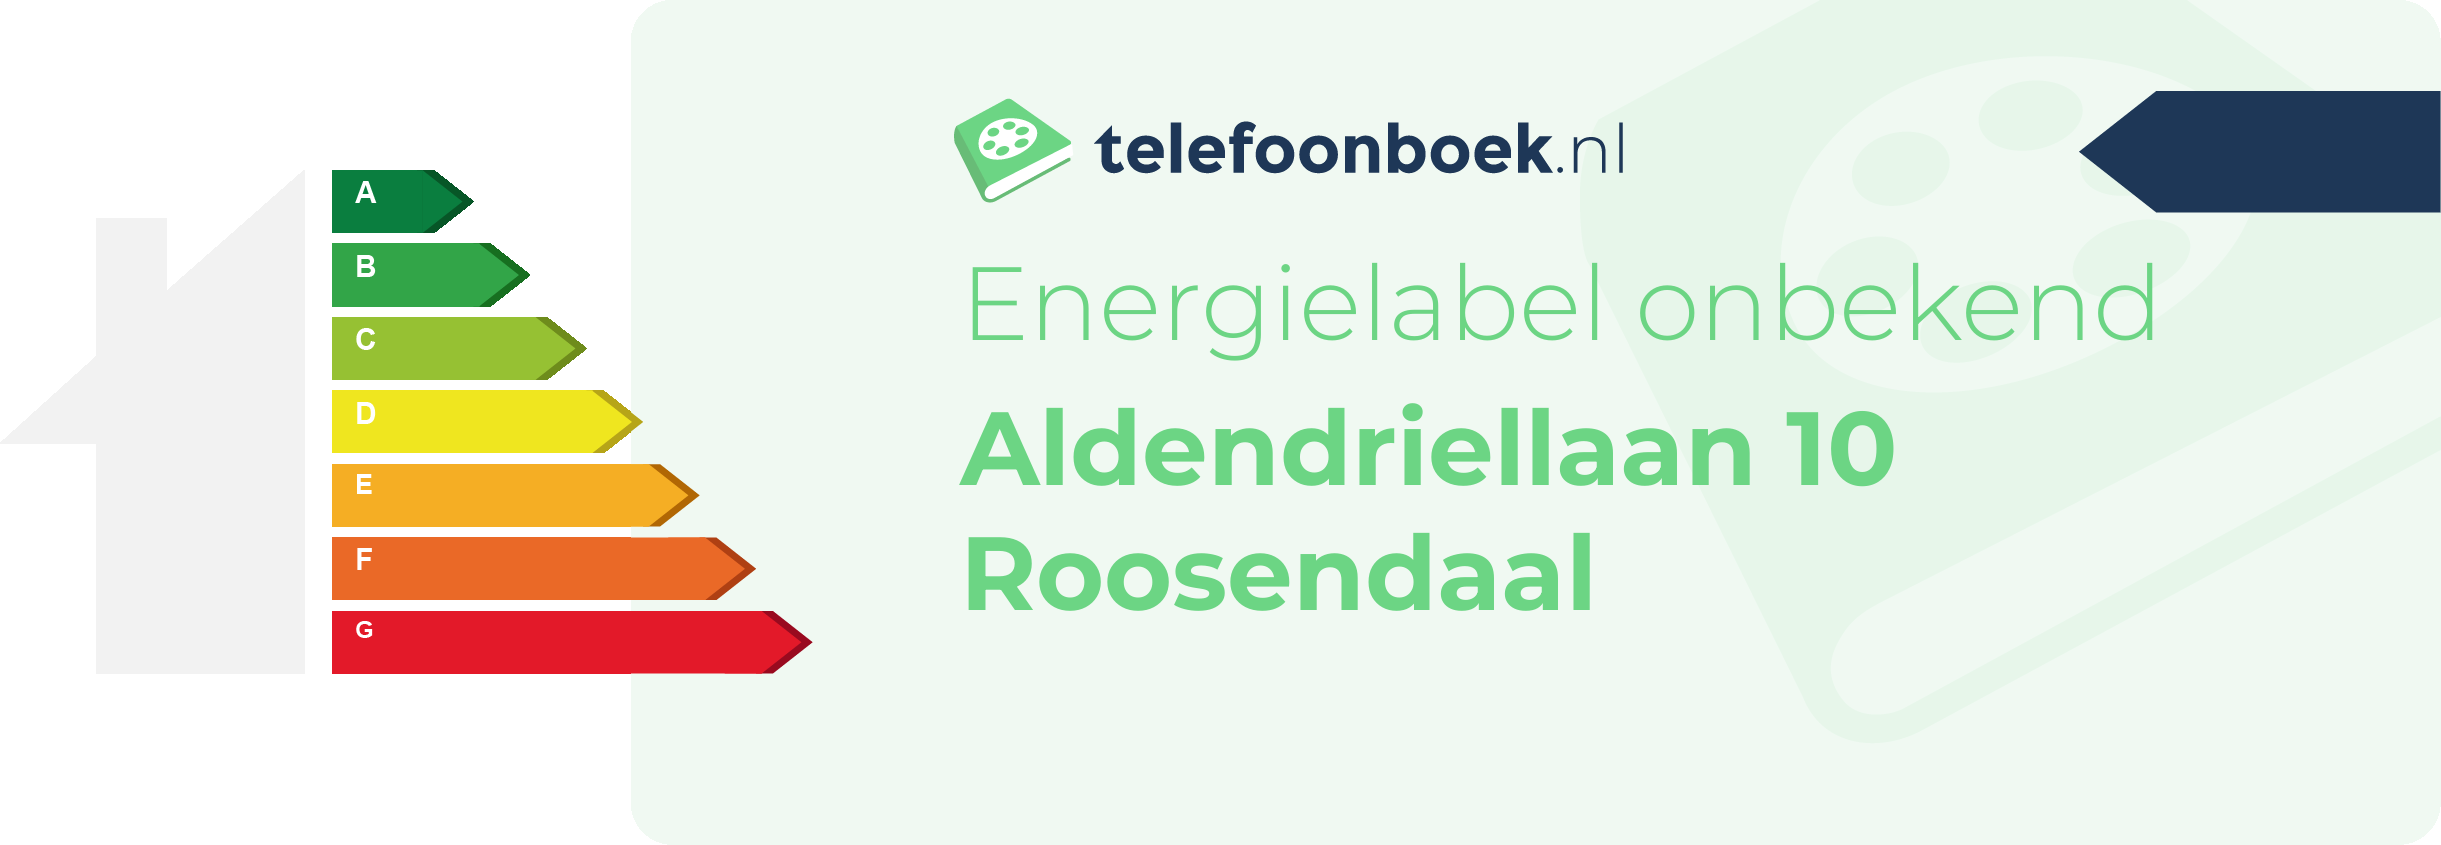 Energielabel Aldendriellaan 10 Roosendaal